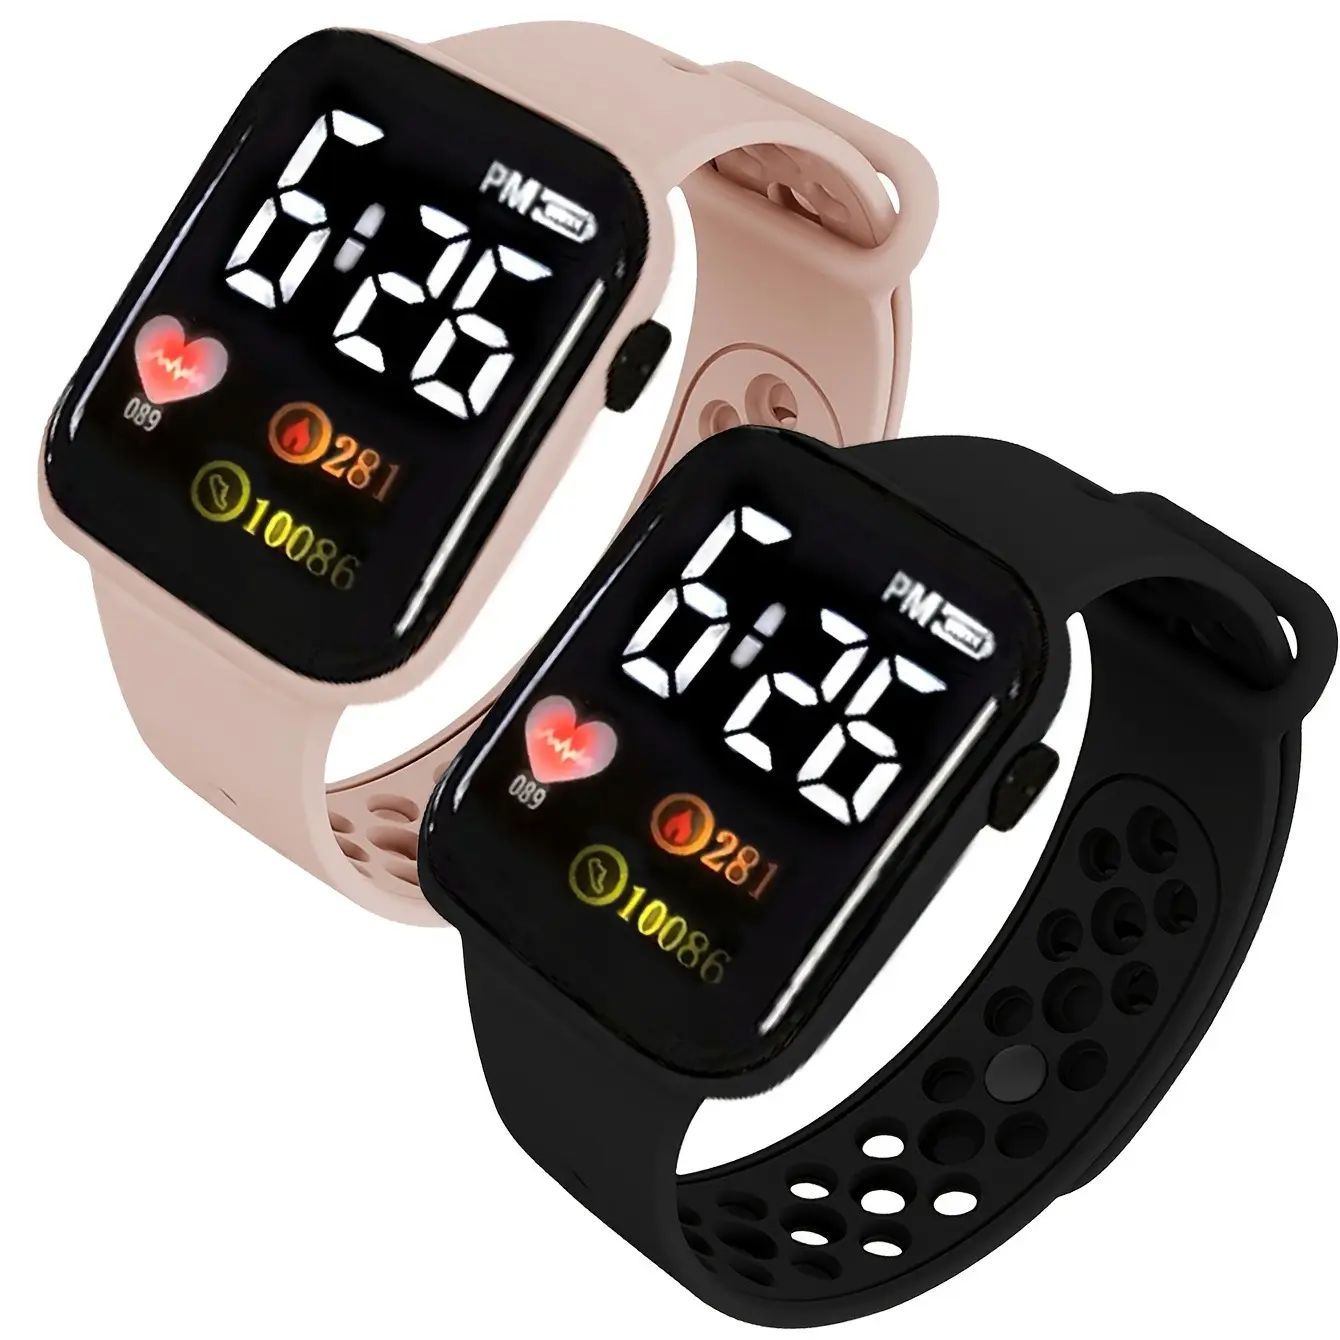 Prezzo economico 8 colori Display Time Digital Led Watch per bambini Fashion Sport cinturino in Silicone orologi elettronici